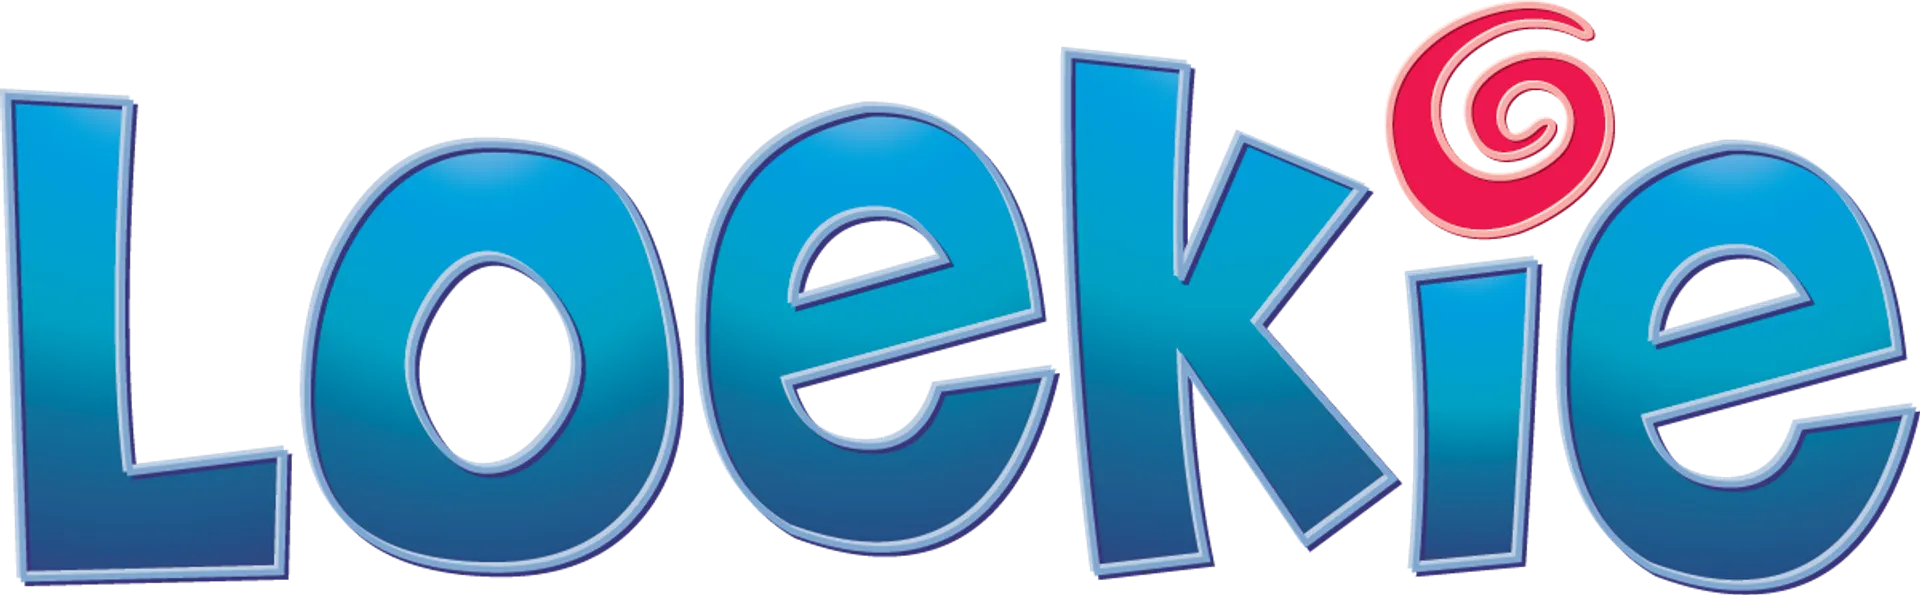 LOEKIE logo